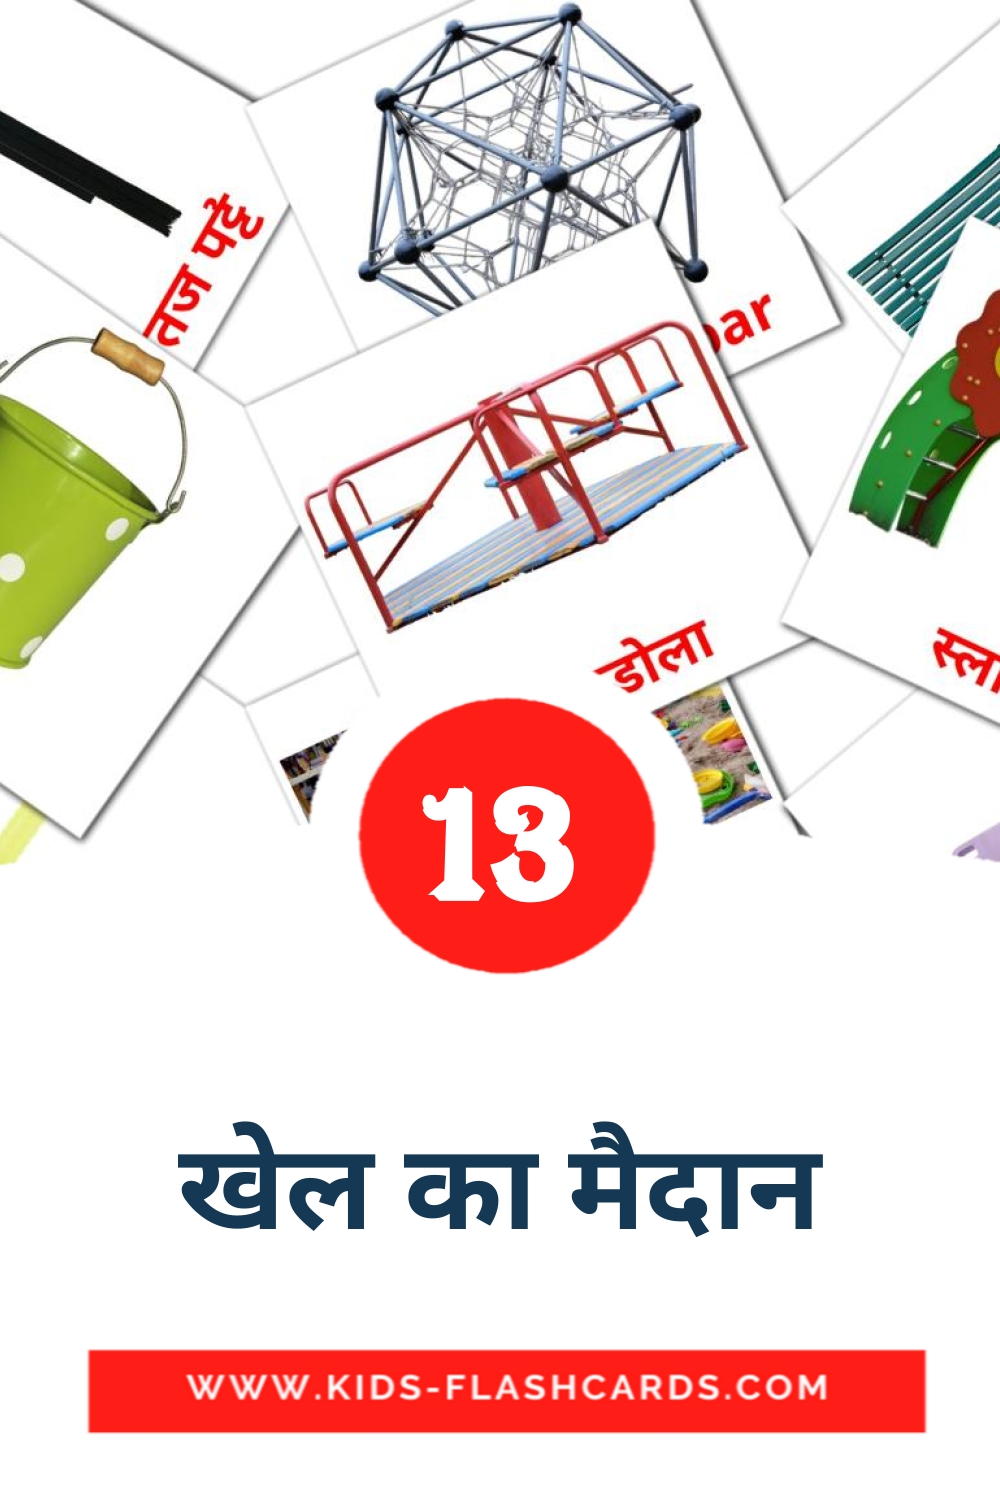 13 tarjetas didacticas de खेल का मैदान para el jardín de infancia en hindi